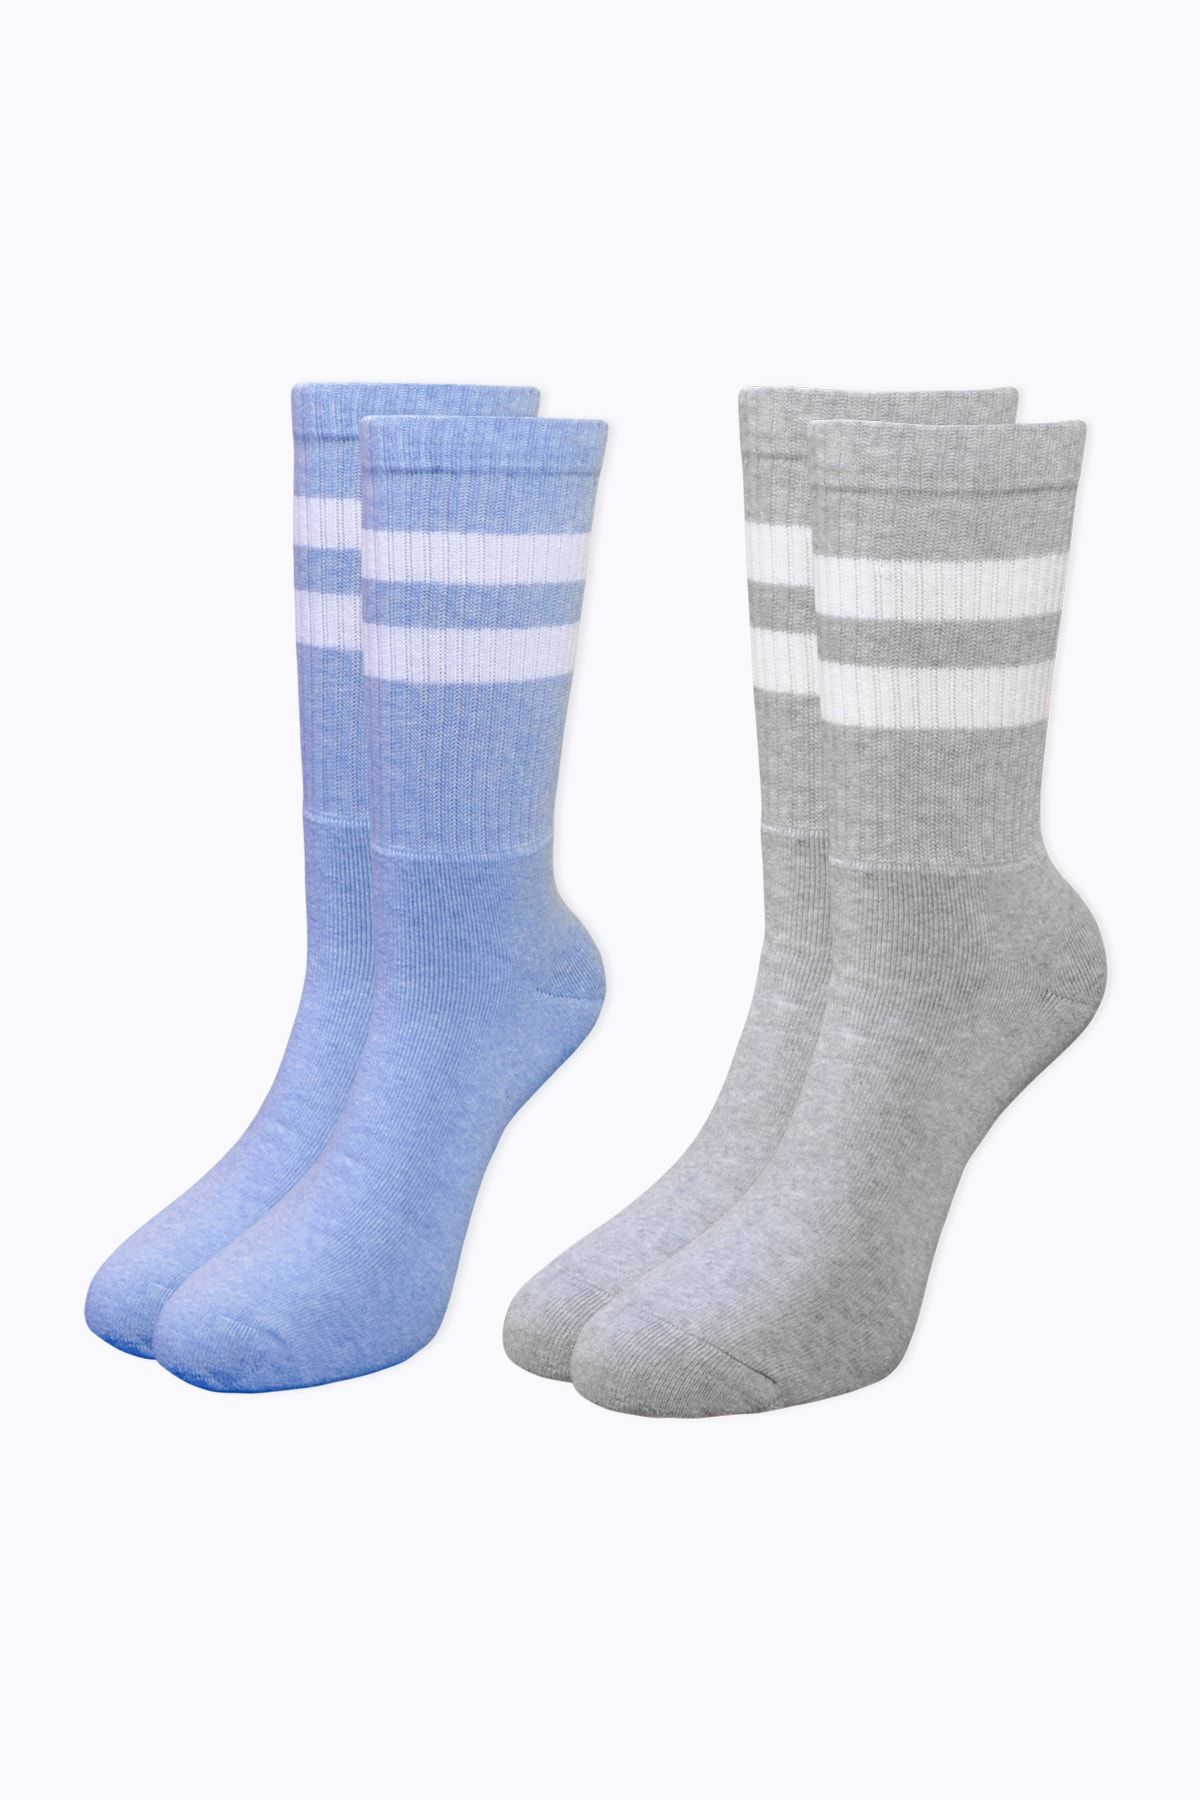 Socks Academy Beyaz Çizgili Havlu Tabanlı Mavi - Gri Çorap Ikili Kutu